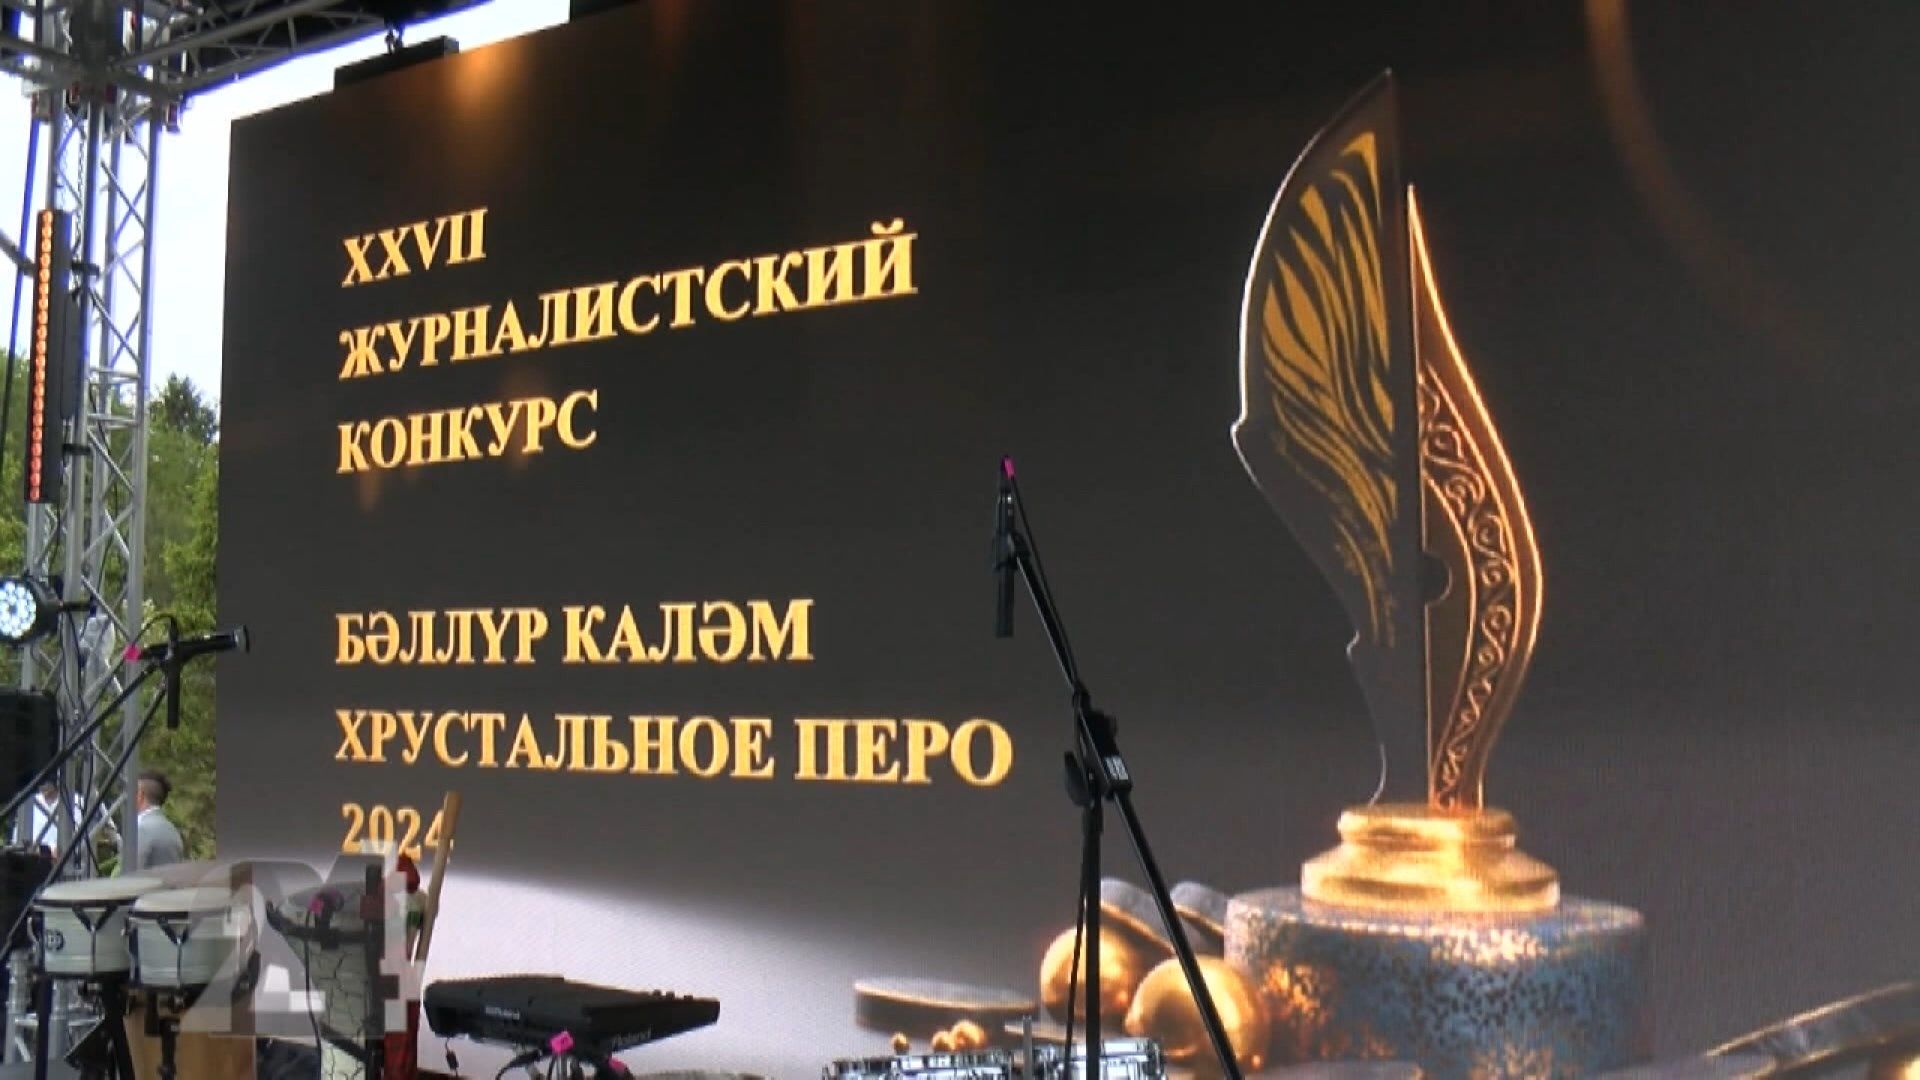 Телеканал Татарстан-24 победил в номинации конкурса Хрустальное перо 2024